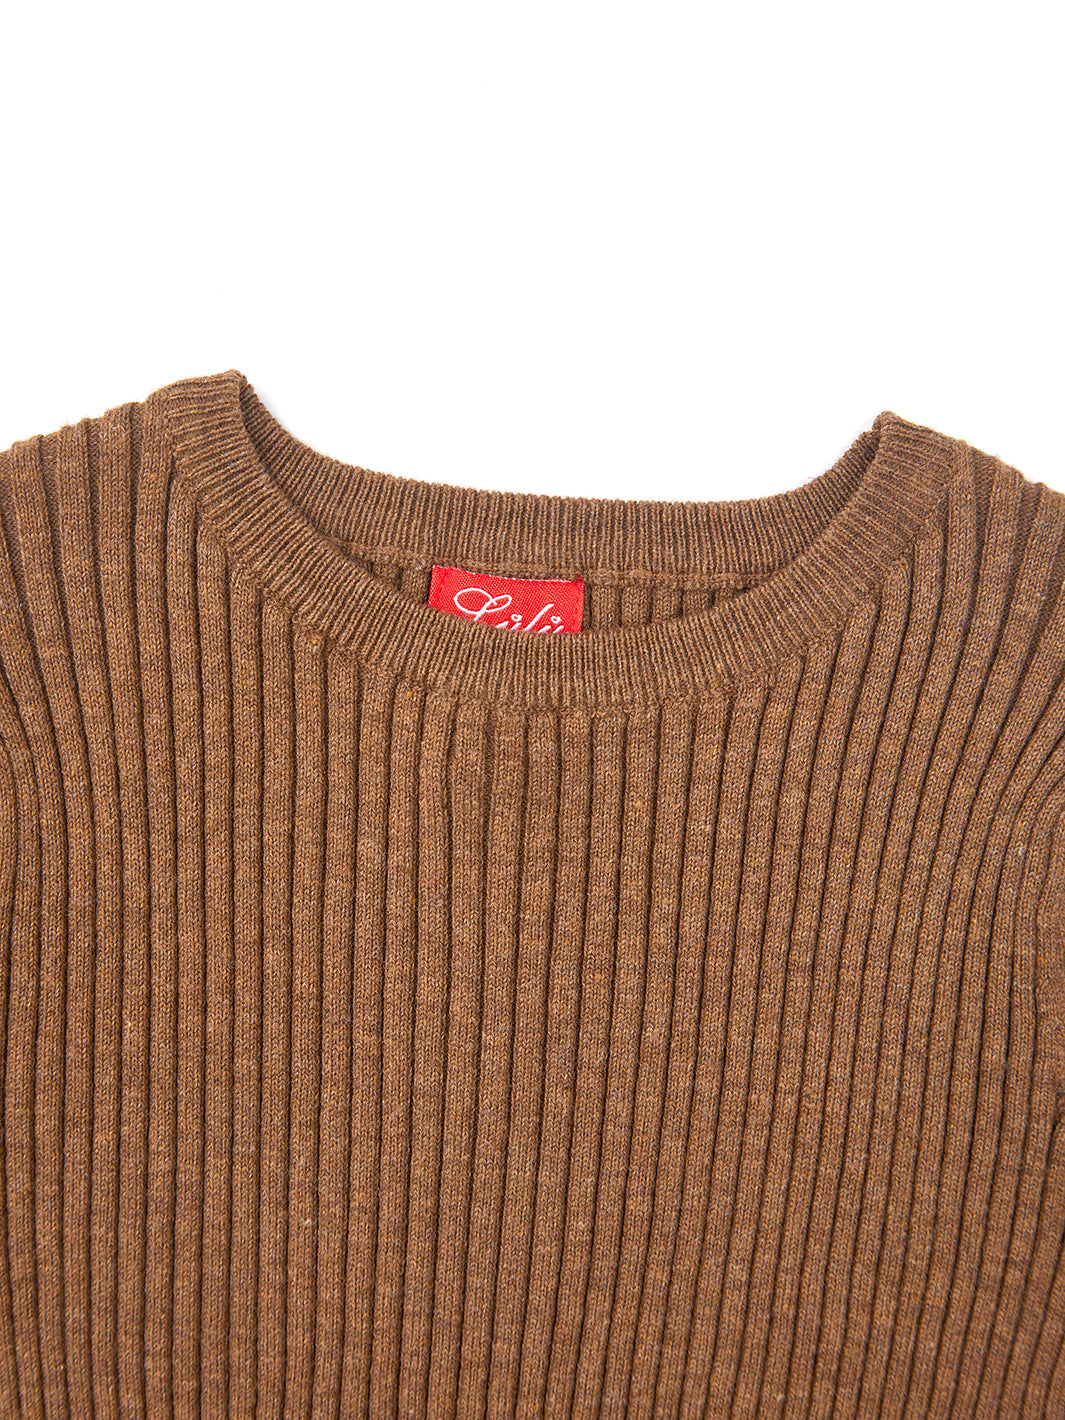 Round Neck Basic Sweater - Camel